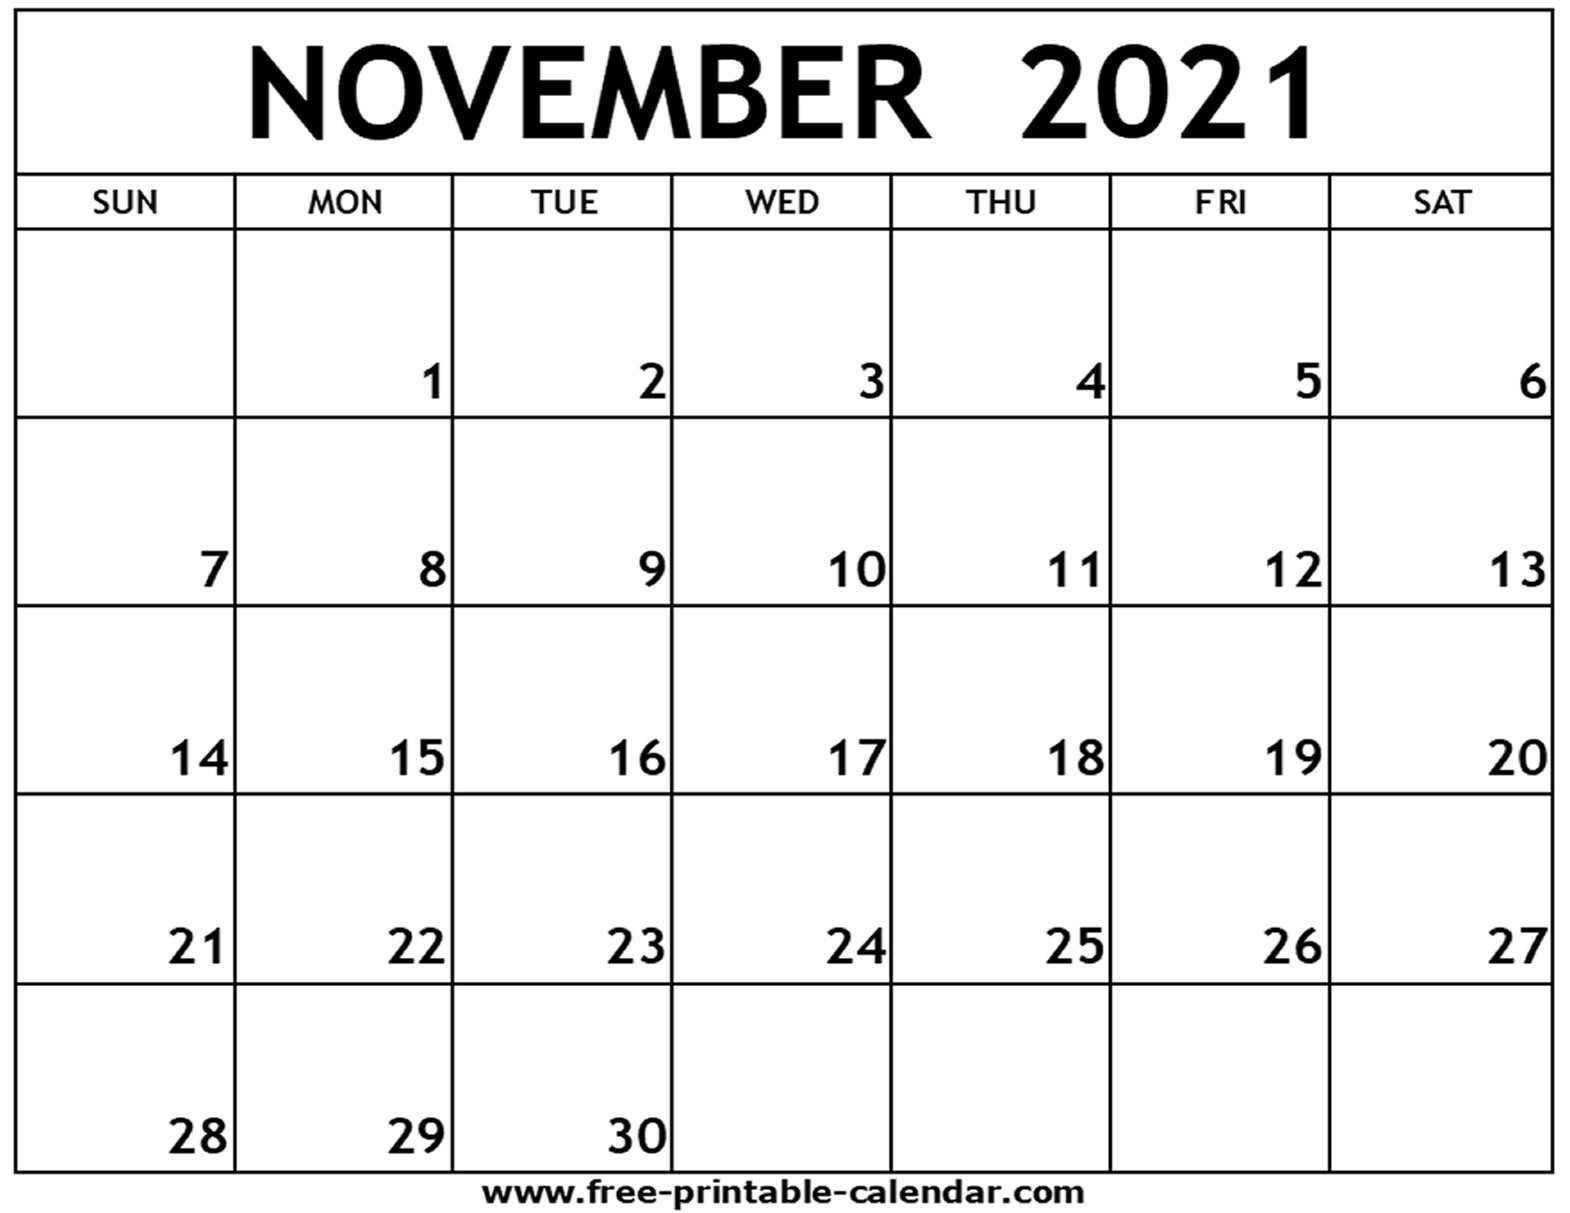 Catch 2021 November Calendar Free Image